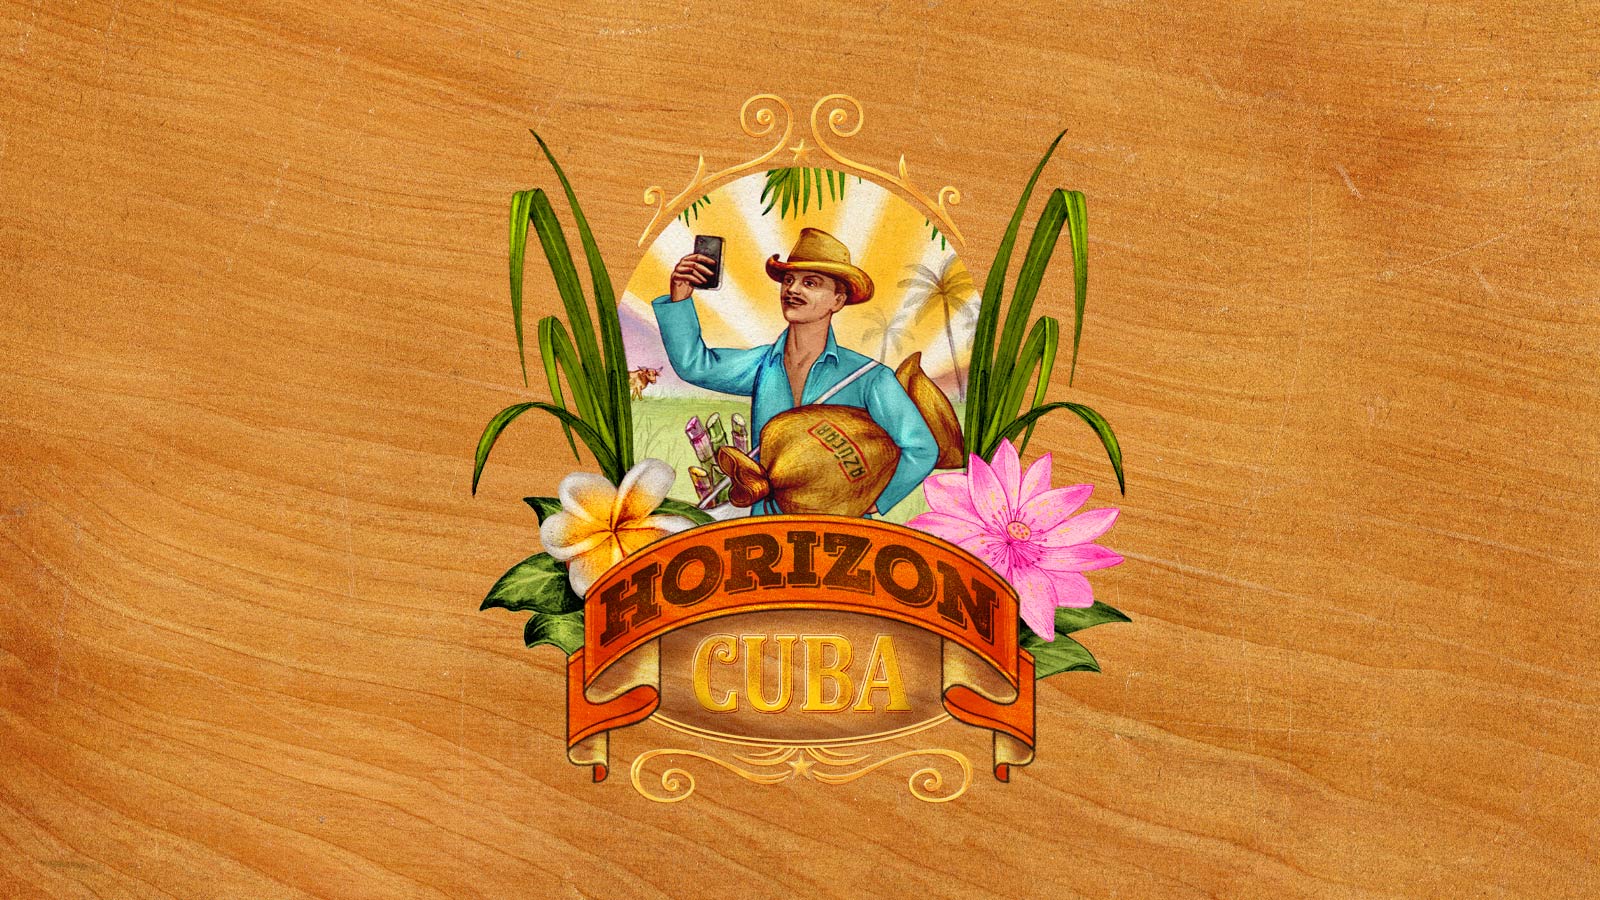 Horizon Cuba